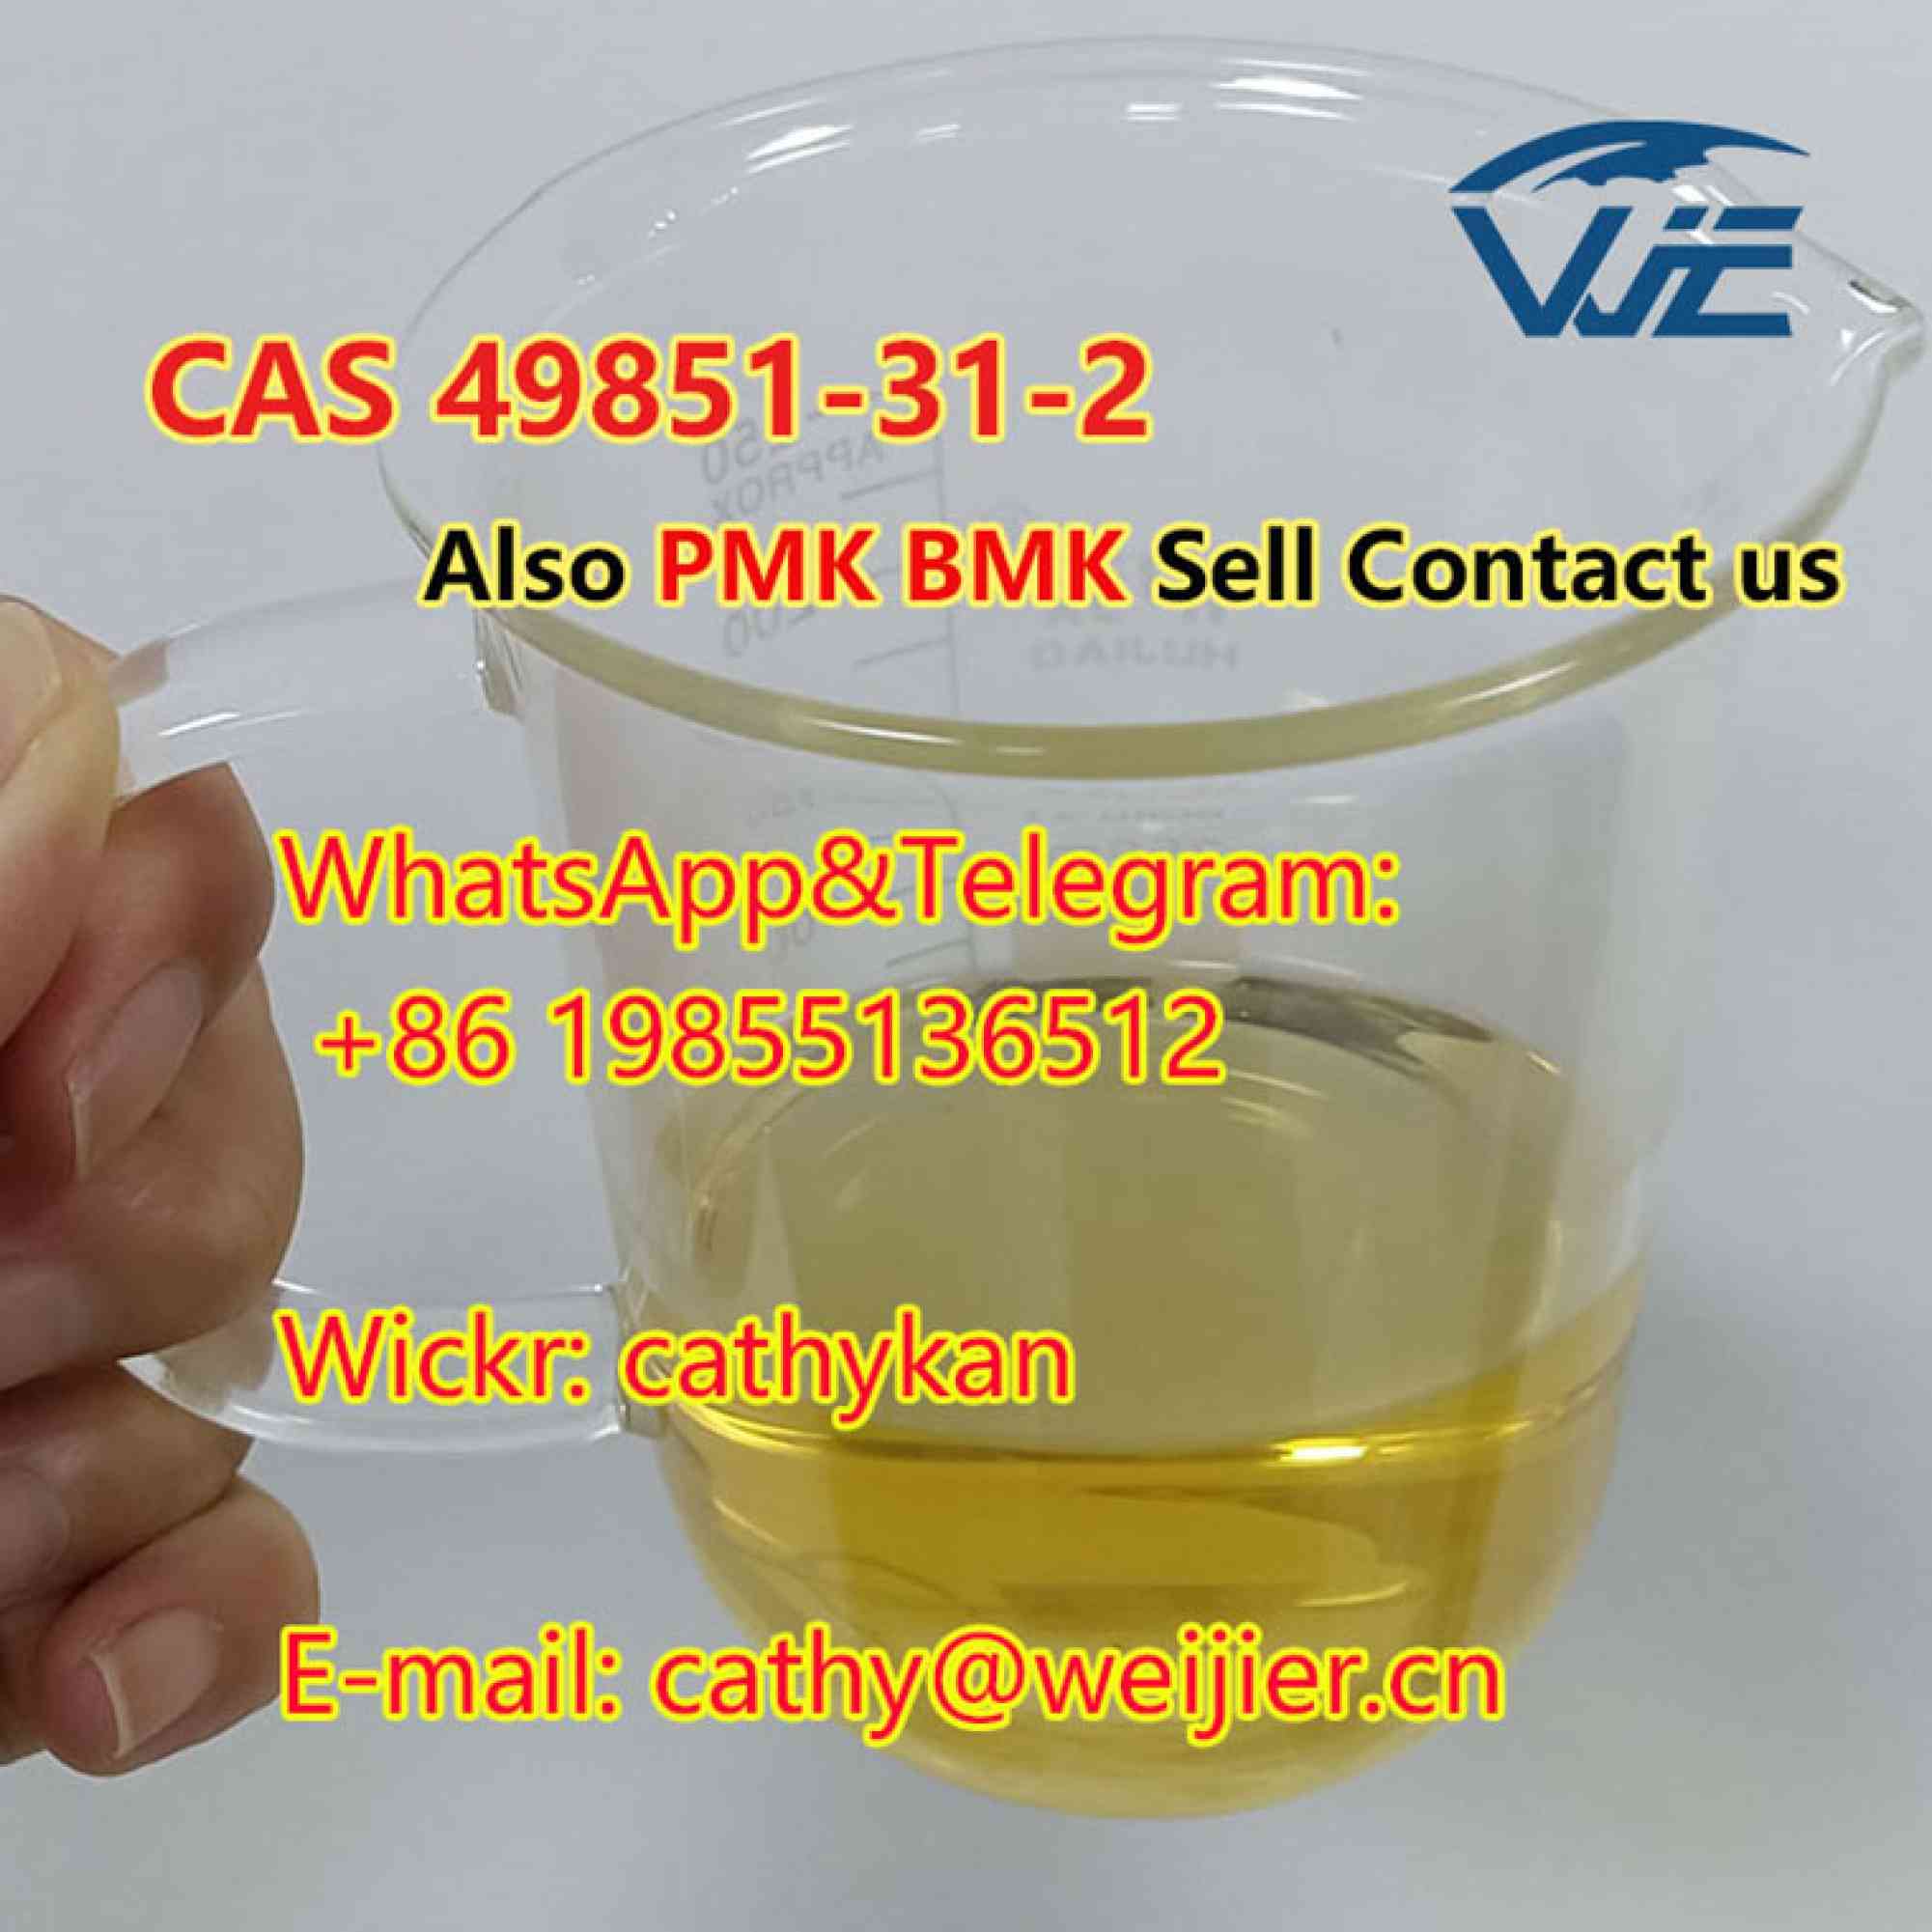 foto de CAS 49851-31-2 High Quality BMK PMK Oil